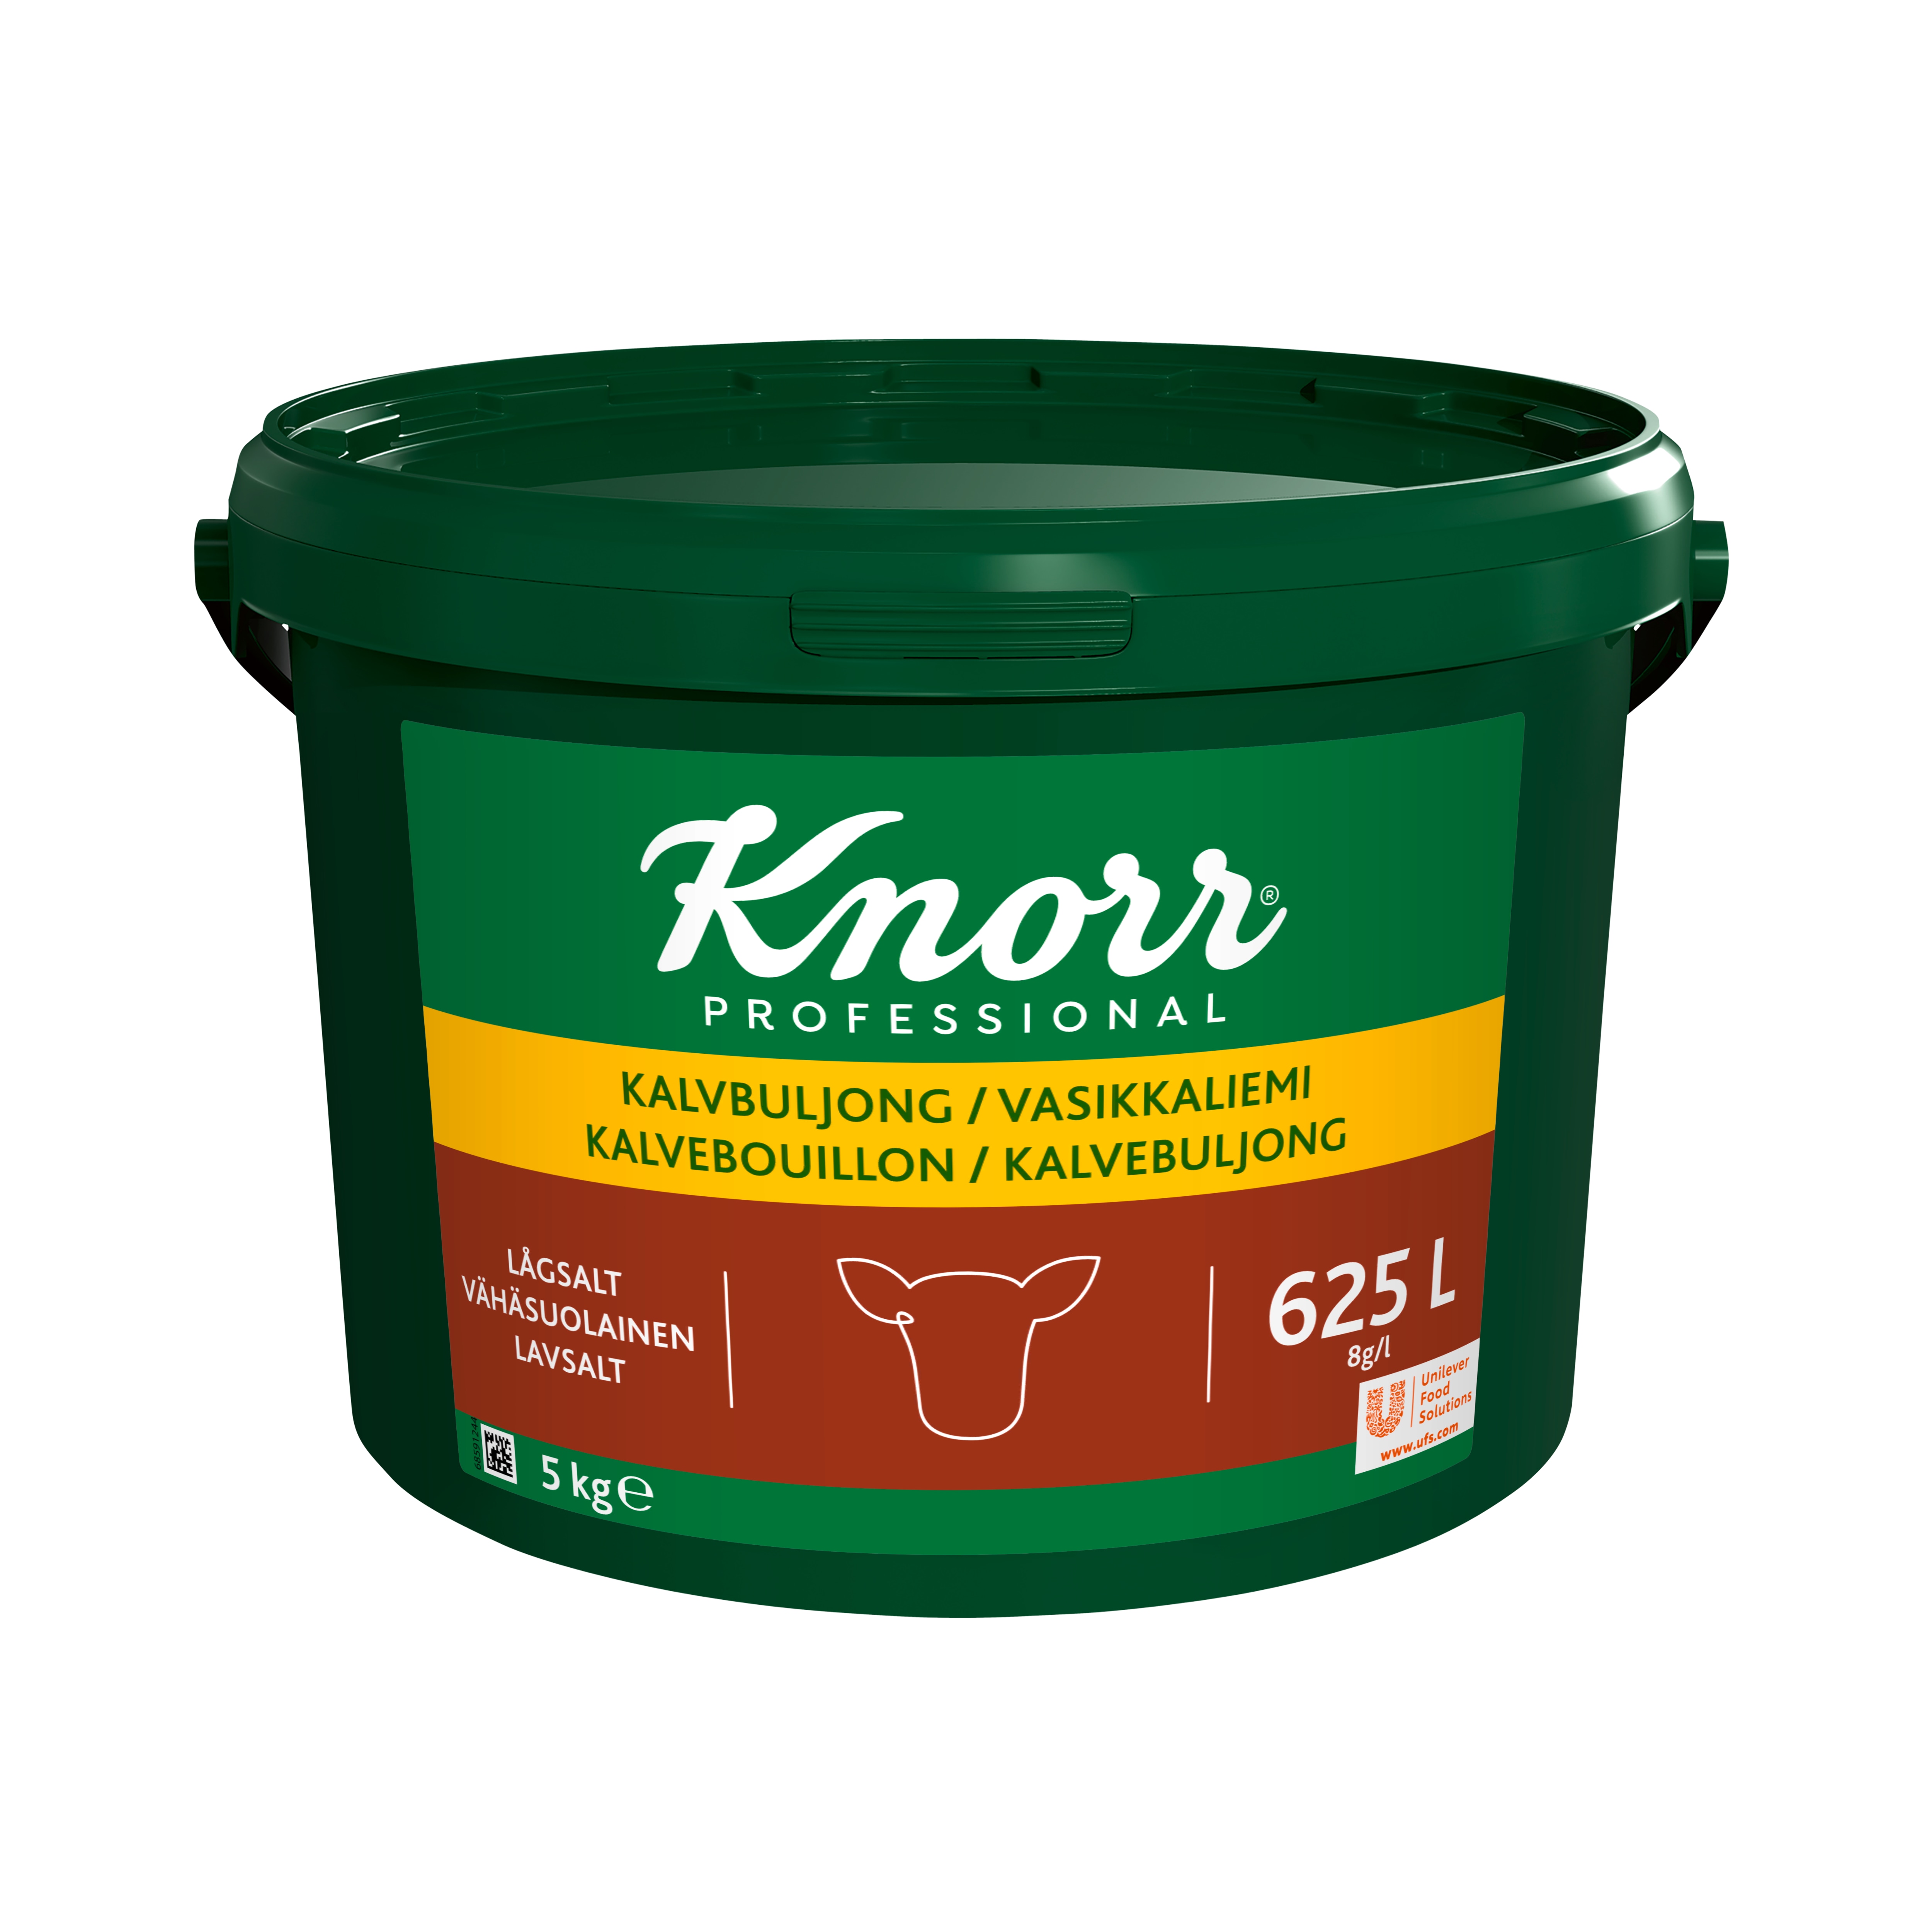 Knorr Kalvbuljong lågsalt 1x5kg